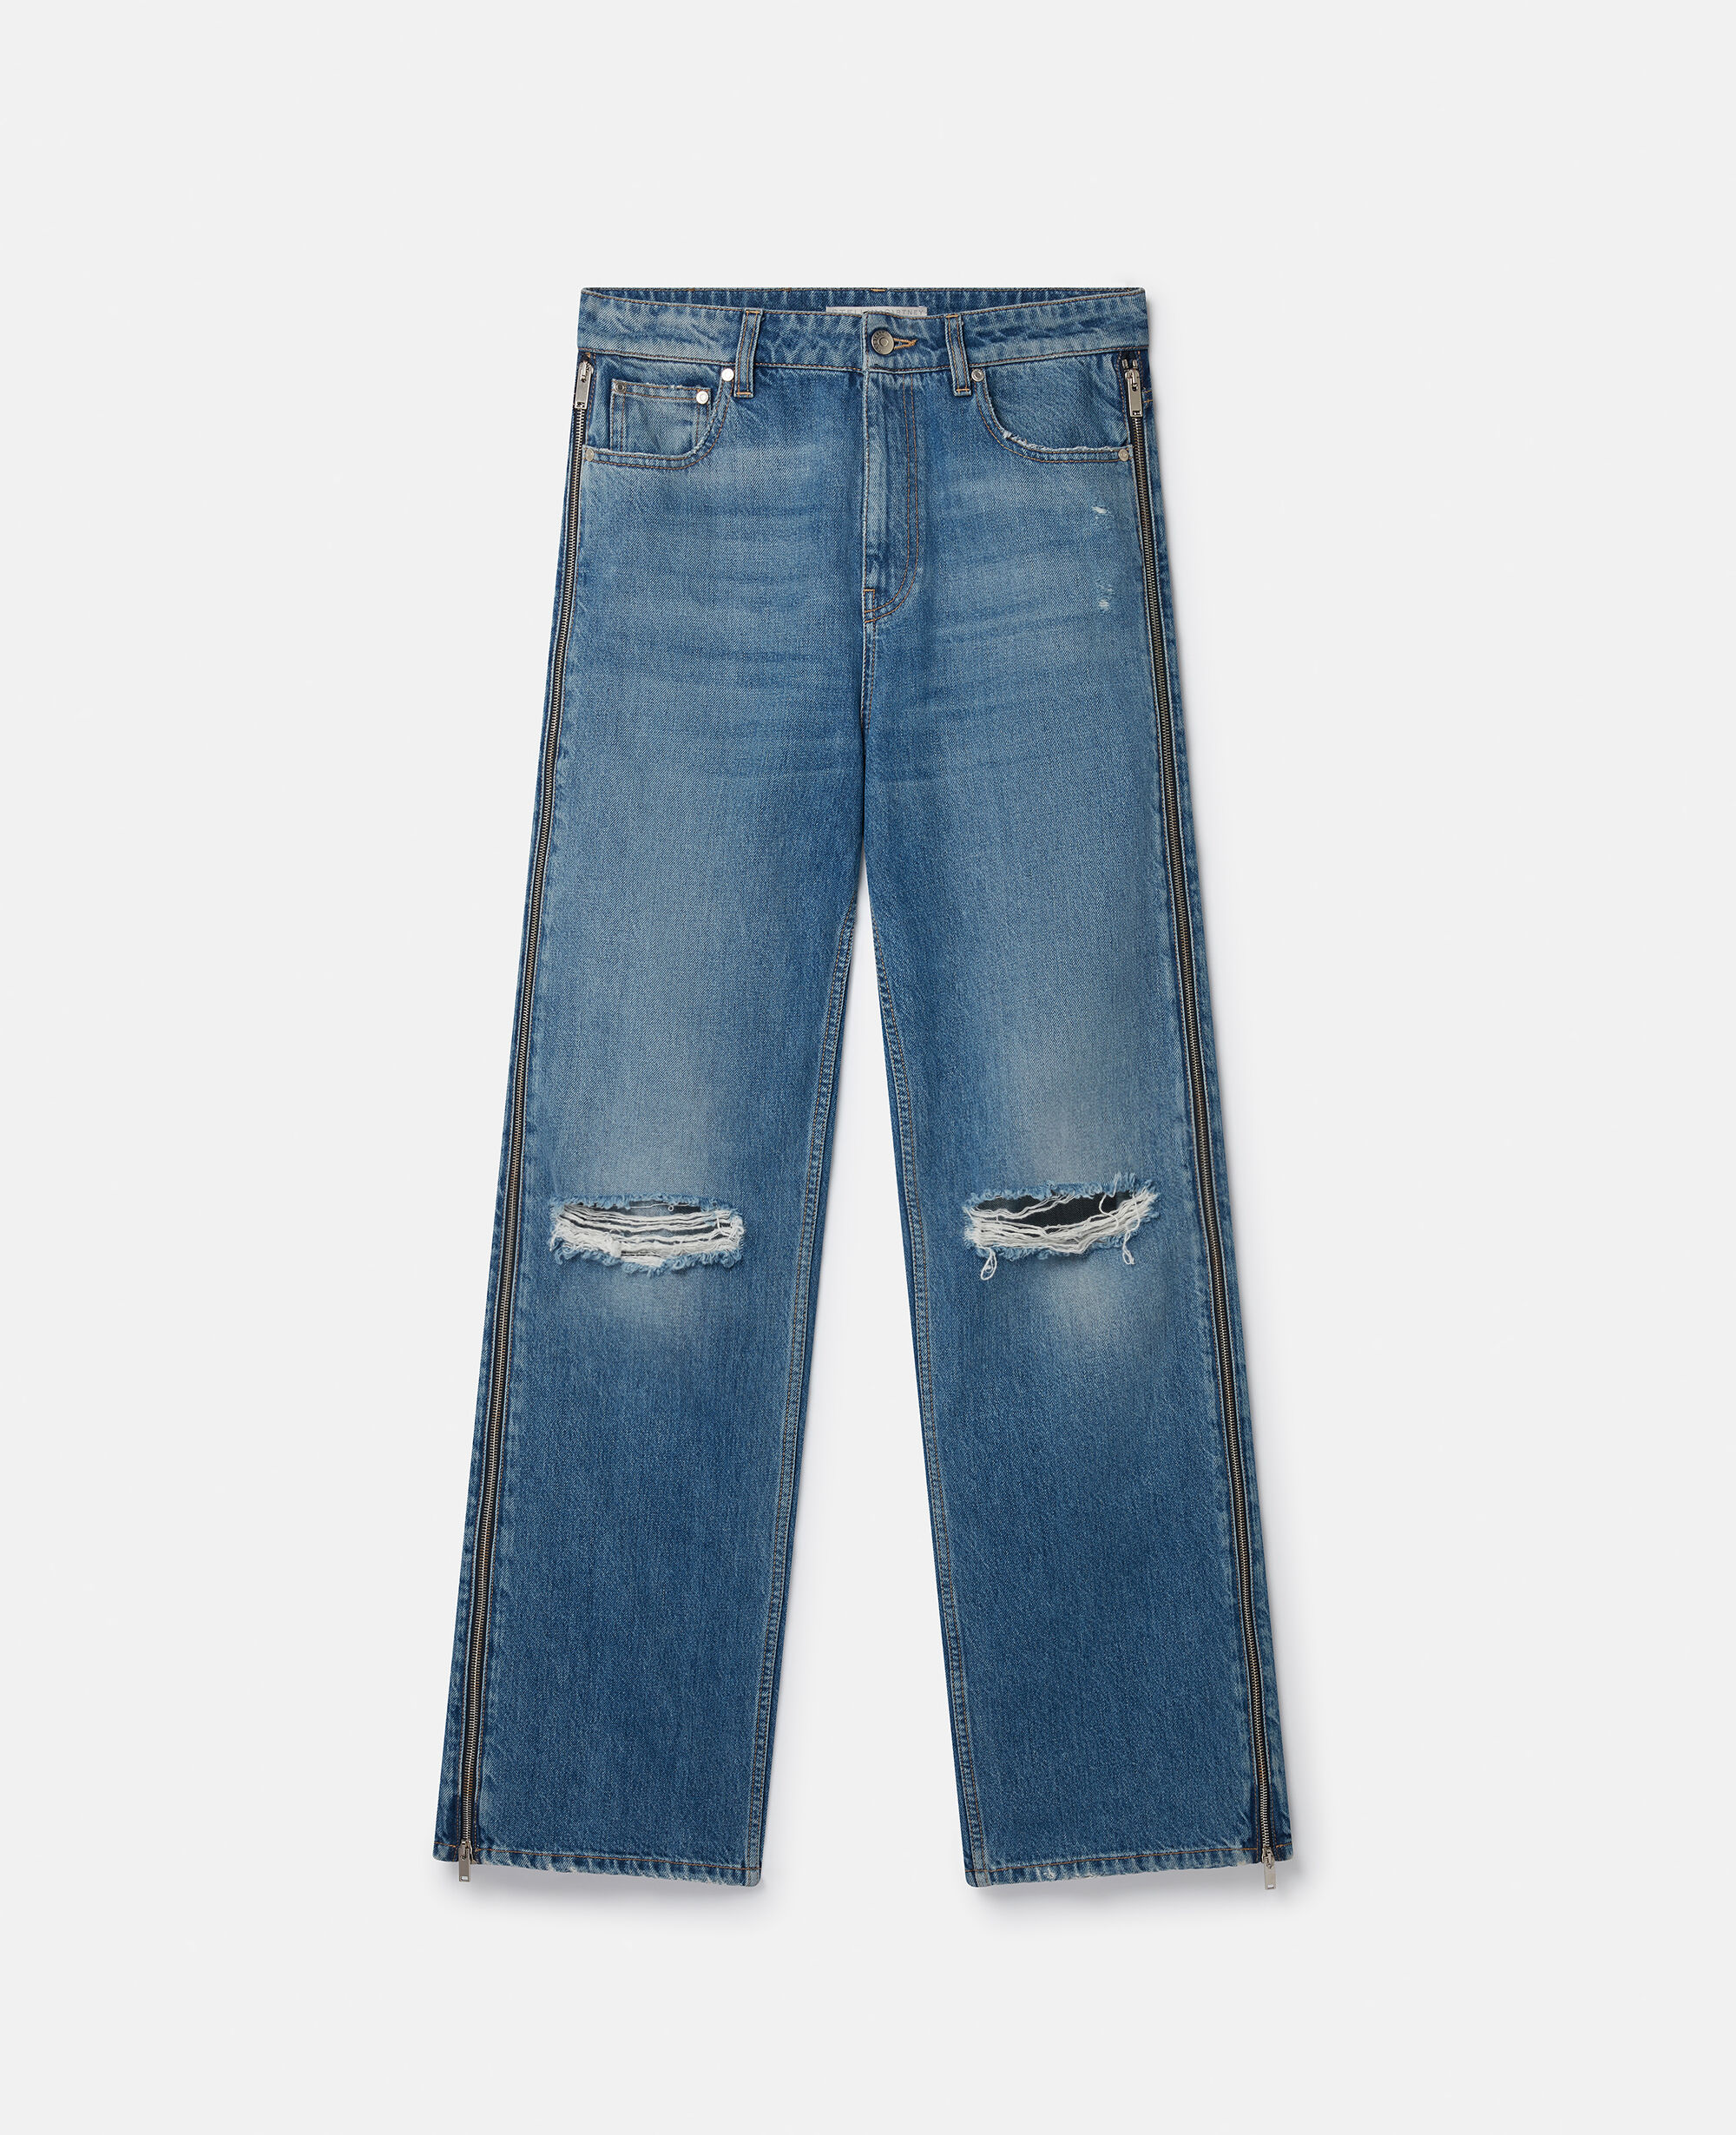 Unique Vintage Blue Denim Cuffed Jeans